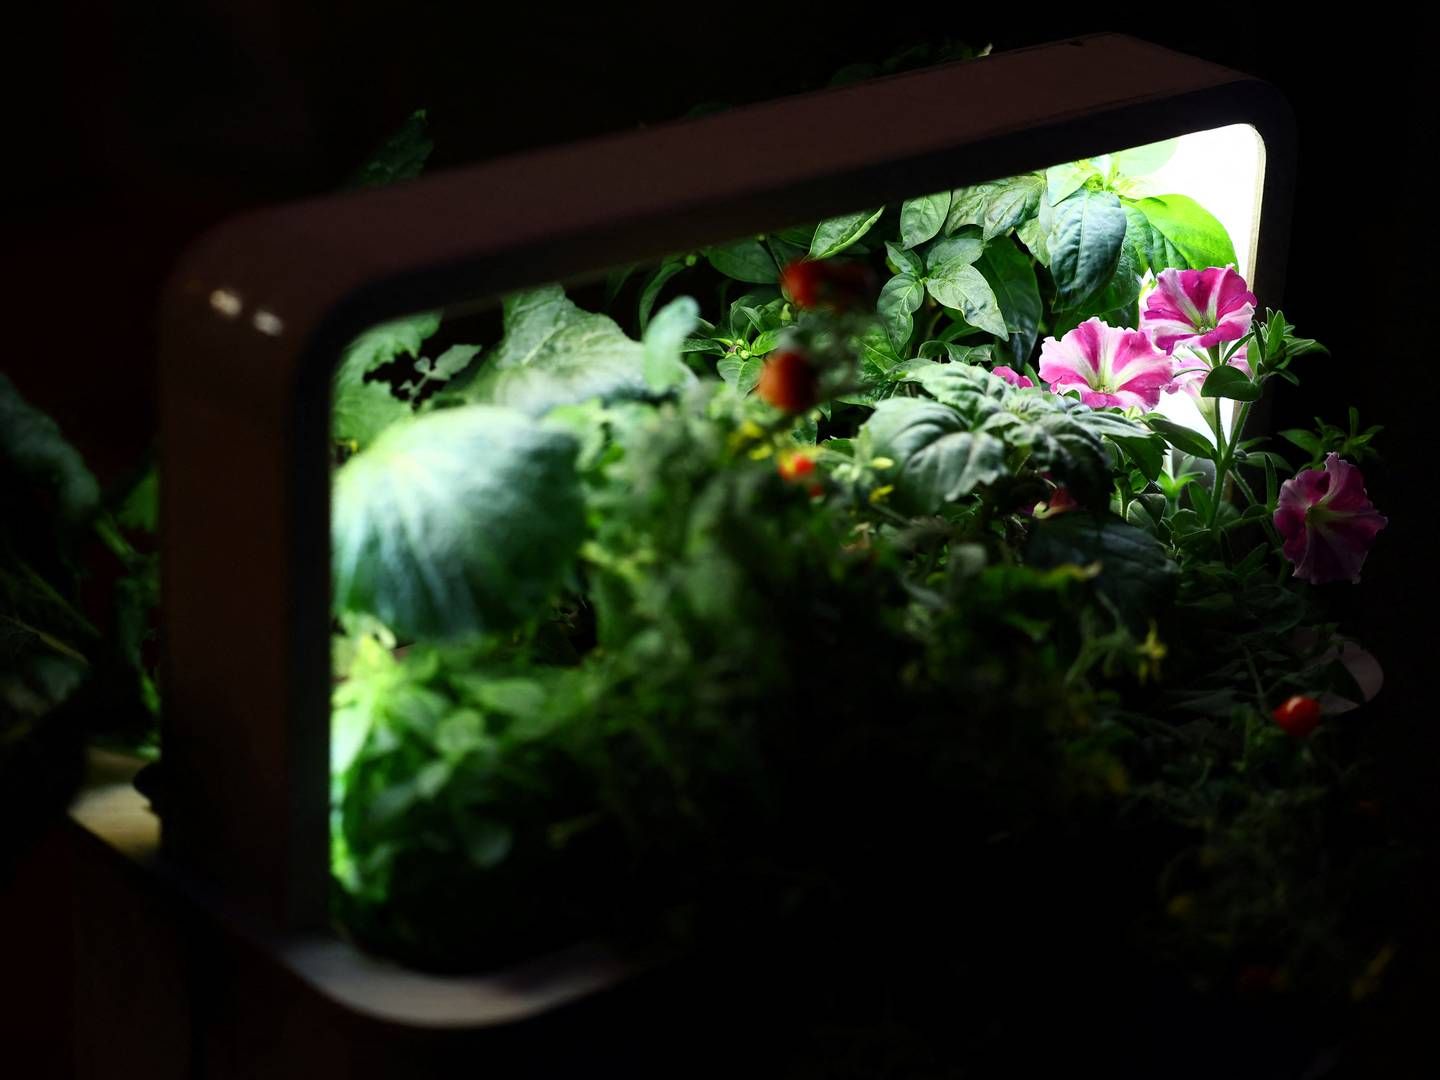 Greenbox er til dem, der vil dyrke grøntsager i stuen. Den grønne trend har bidt sig fast. | Foto: Lisi Niesner/Reuters/Ritzau Scanpix